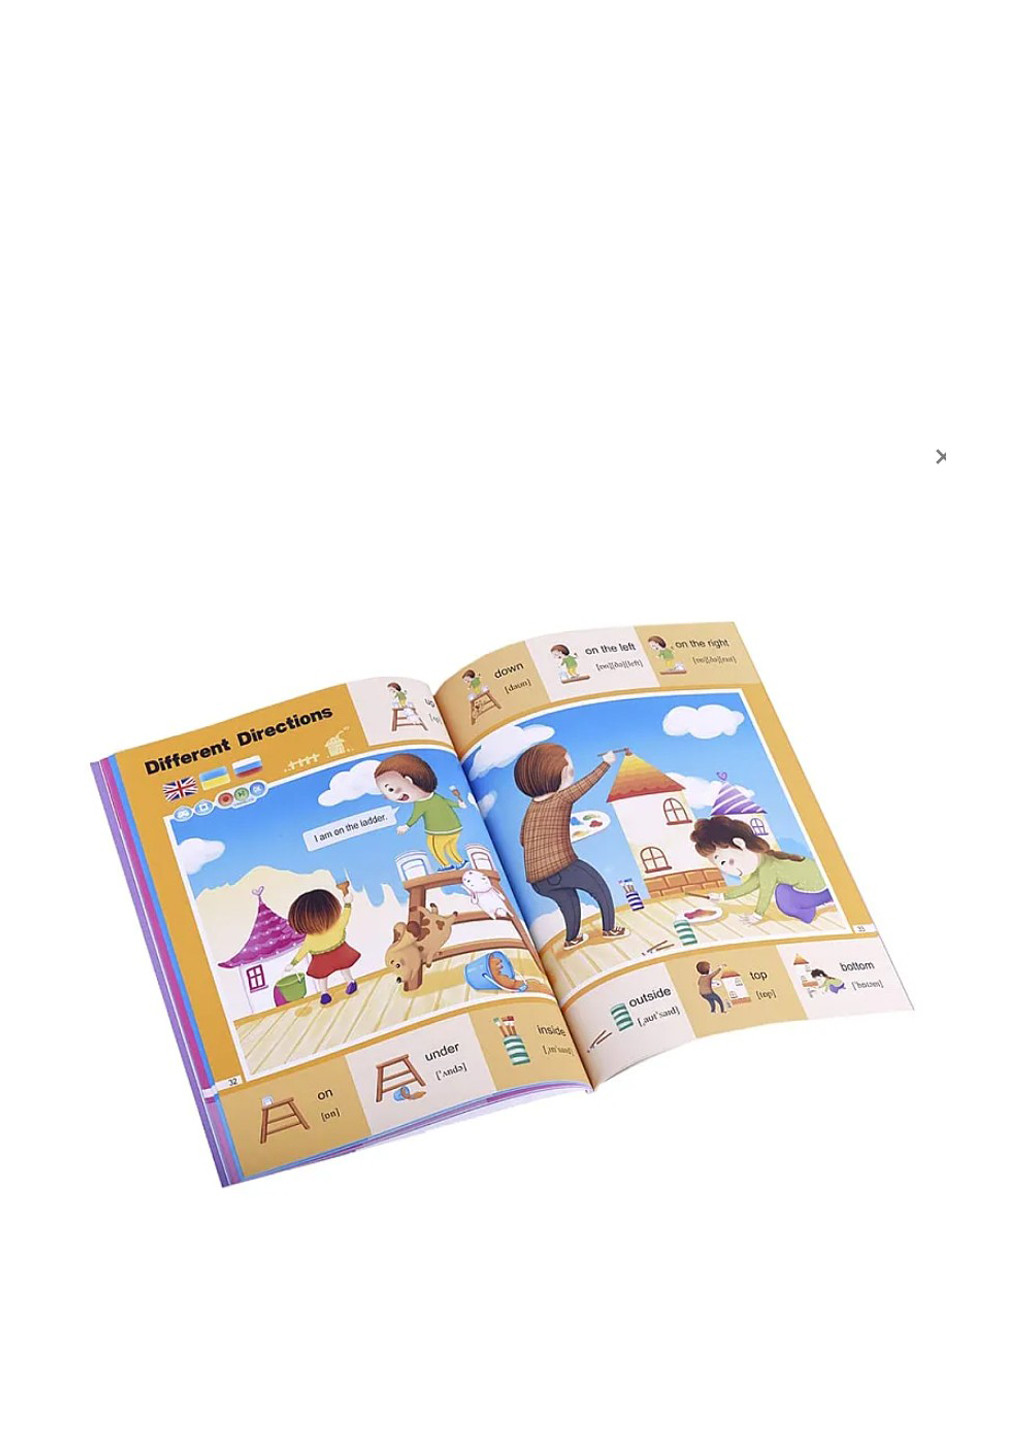 Інтерактивна навчальна книга 200 перших слів, сезон 3 Smart Koala (292303939)